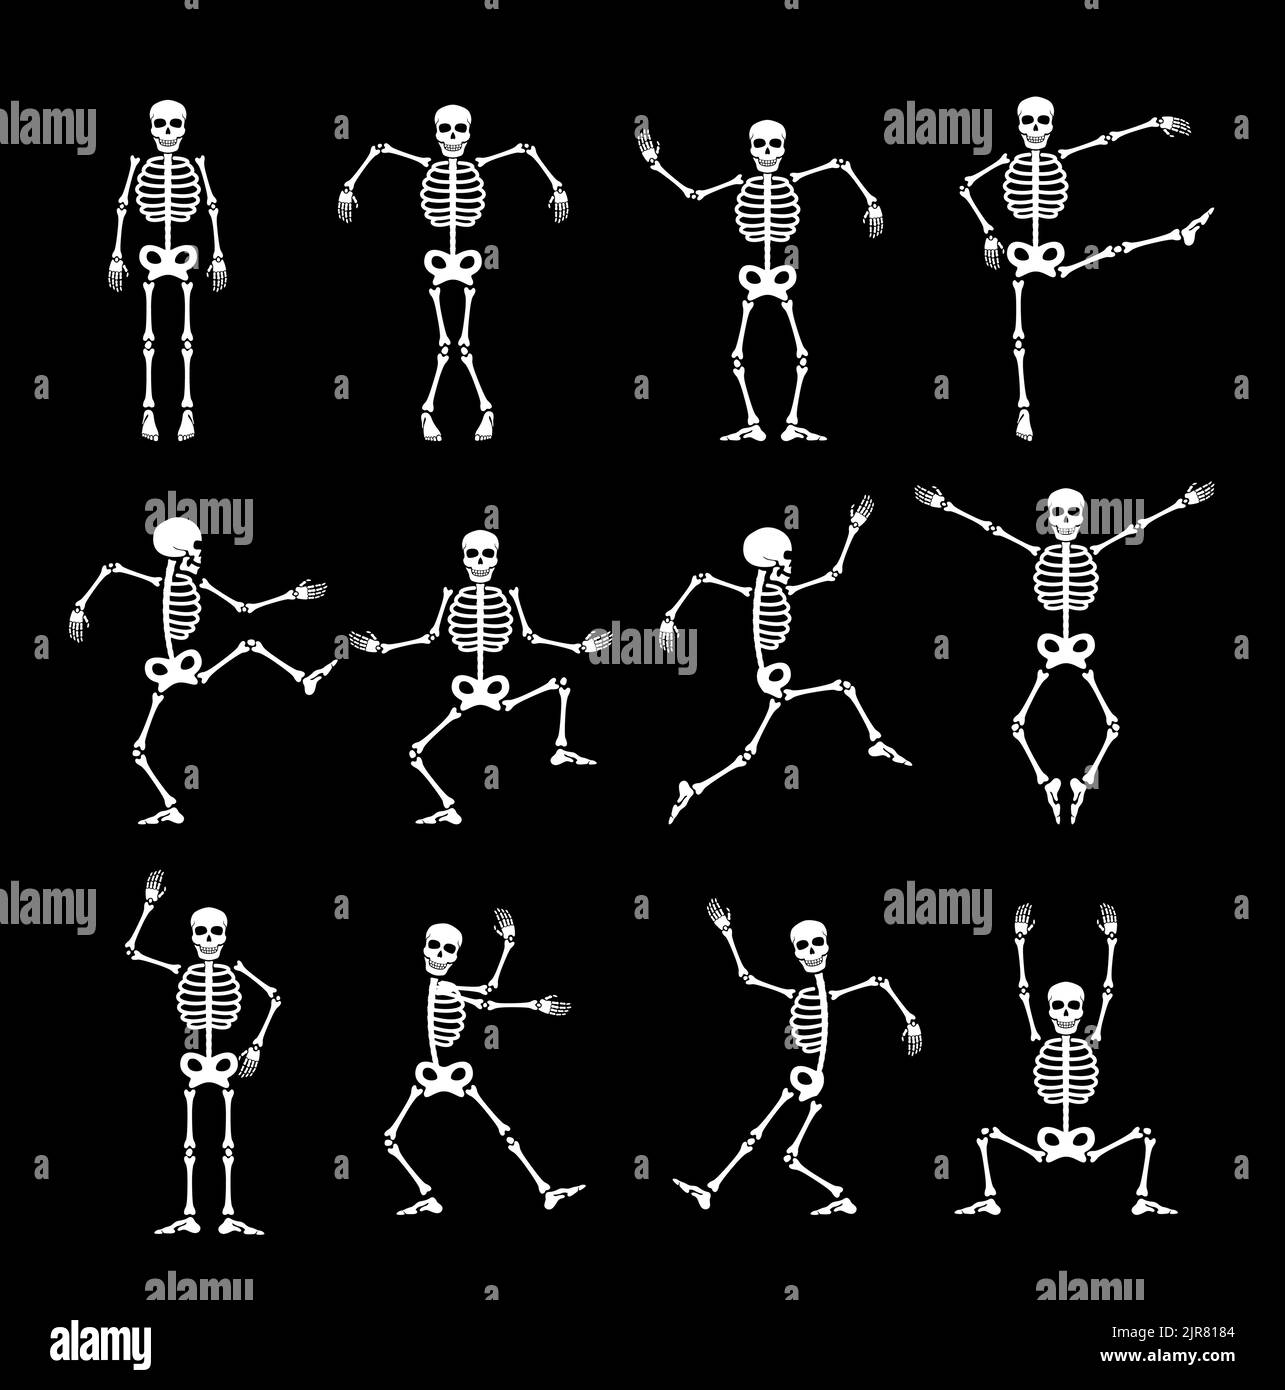 Skeleton danse jeu d'animation sprite. Ensemble vectoriel de personnages drôles d'halloween dans différentes poses. Un adorable personnage de creepy avec danse du squelette, saut, squating et animation de séquence de jeu Illustration de Vecteur